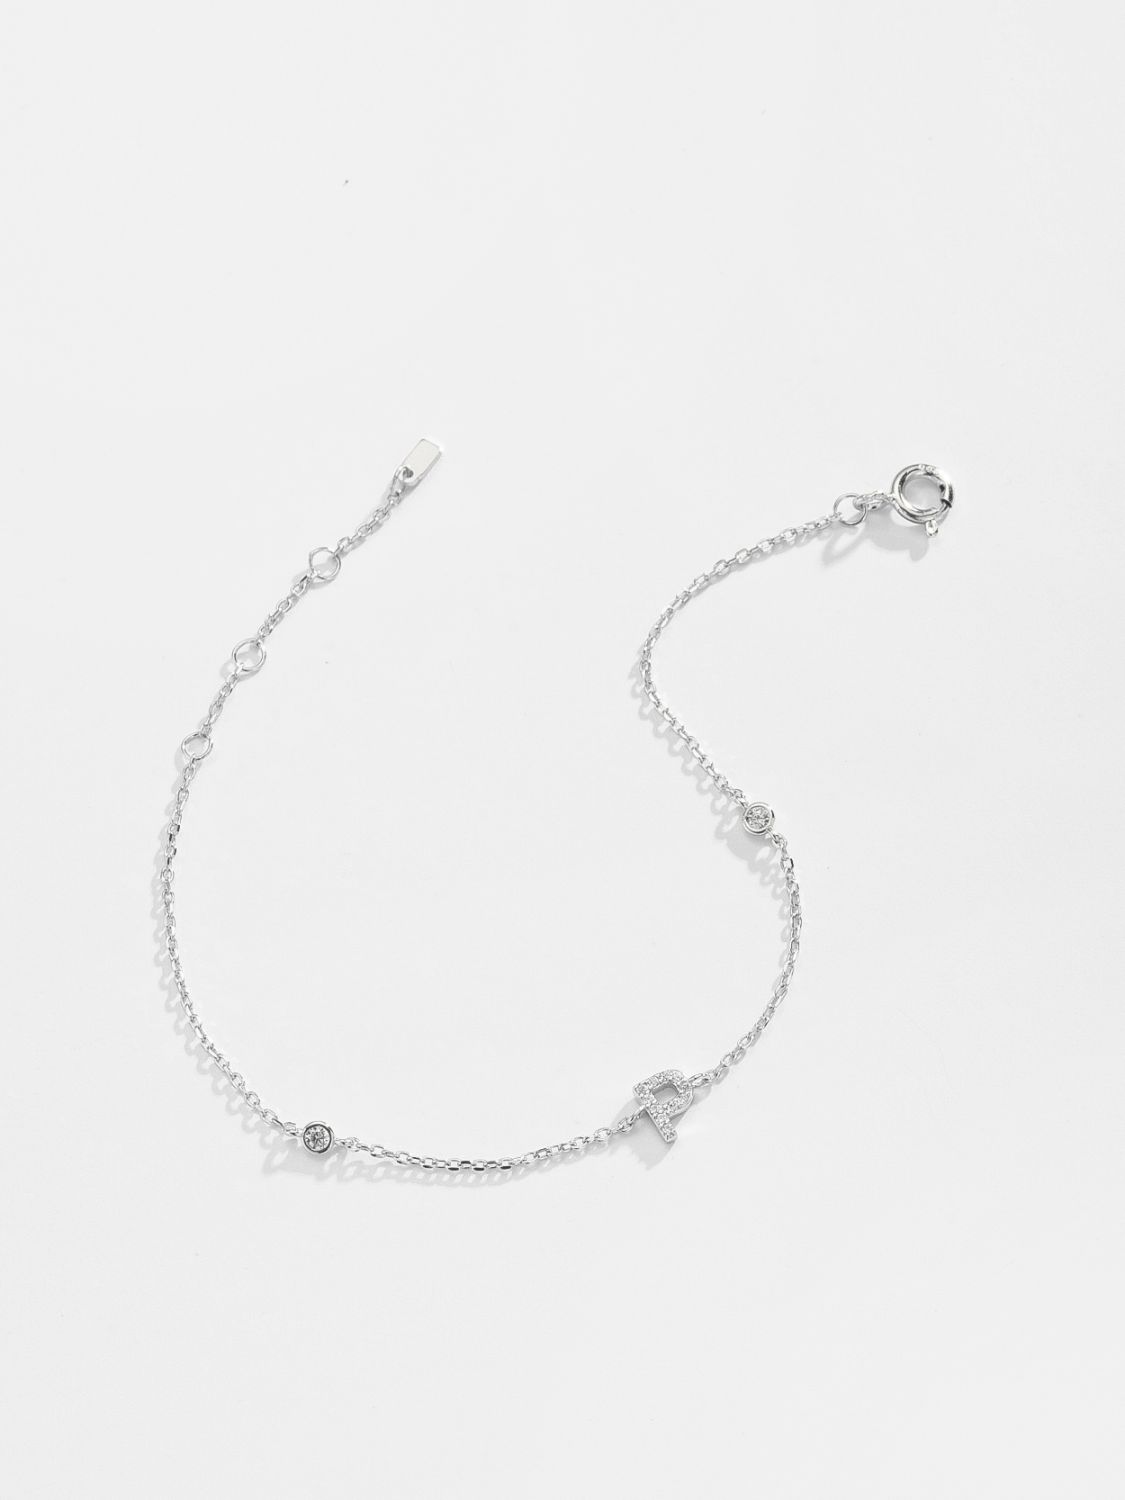 L To P Zircon 925 Sterling Silver Bracelet - Women’s Jewelry - Bracelets - 29 - 2024